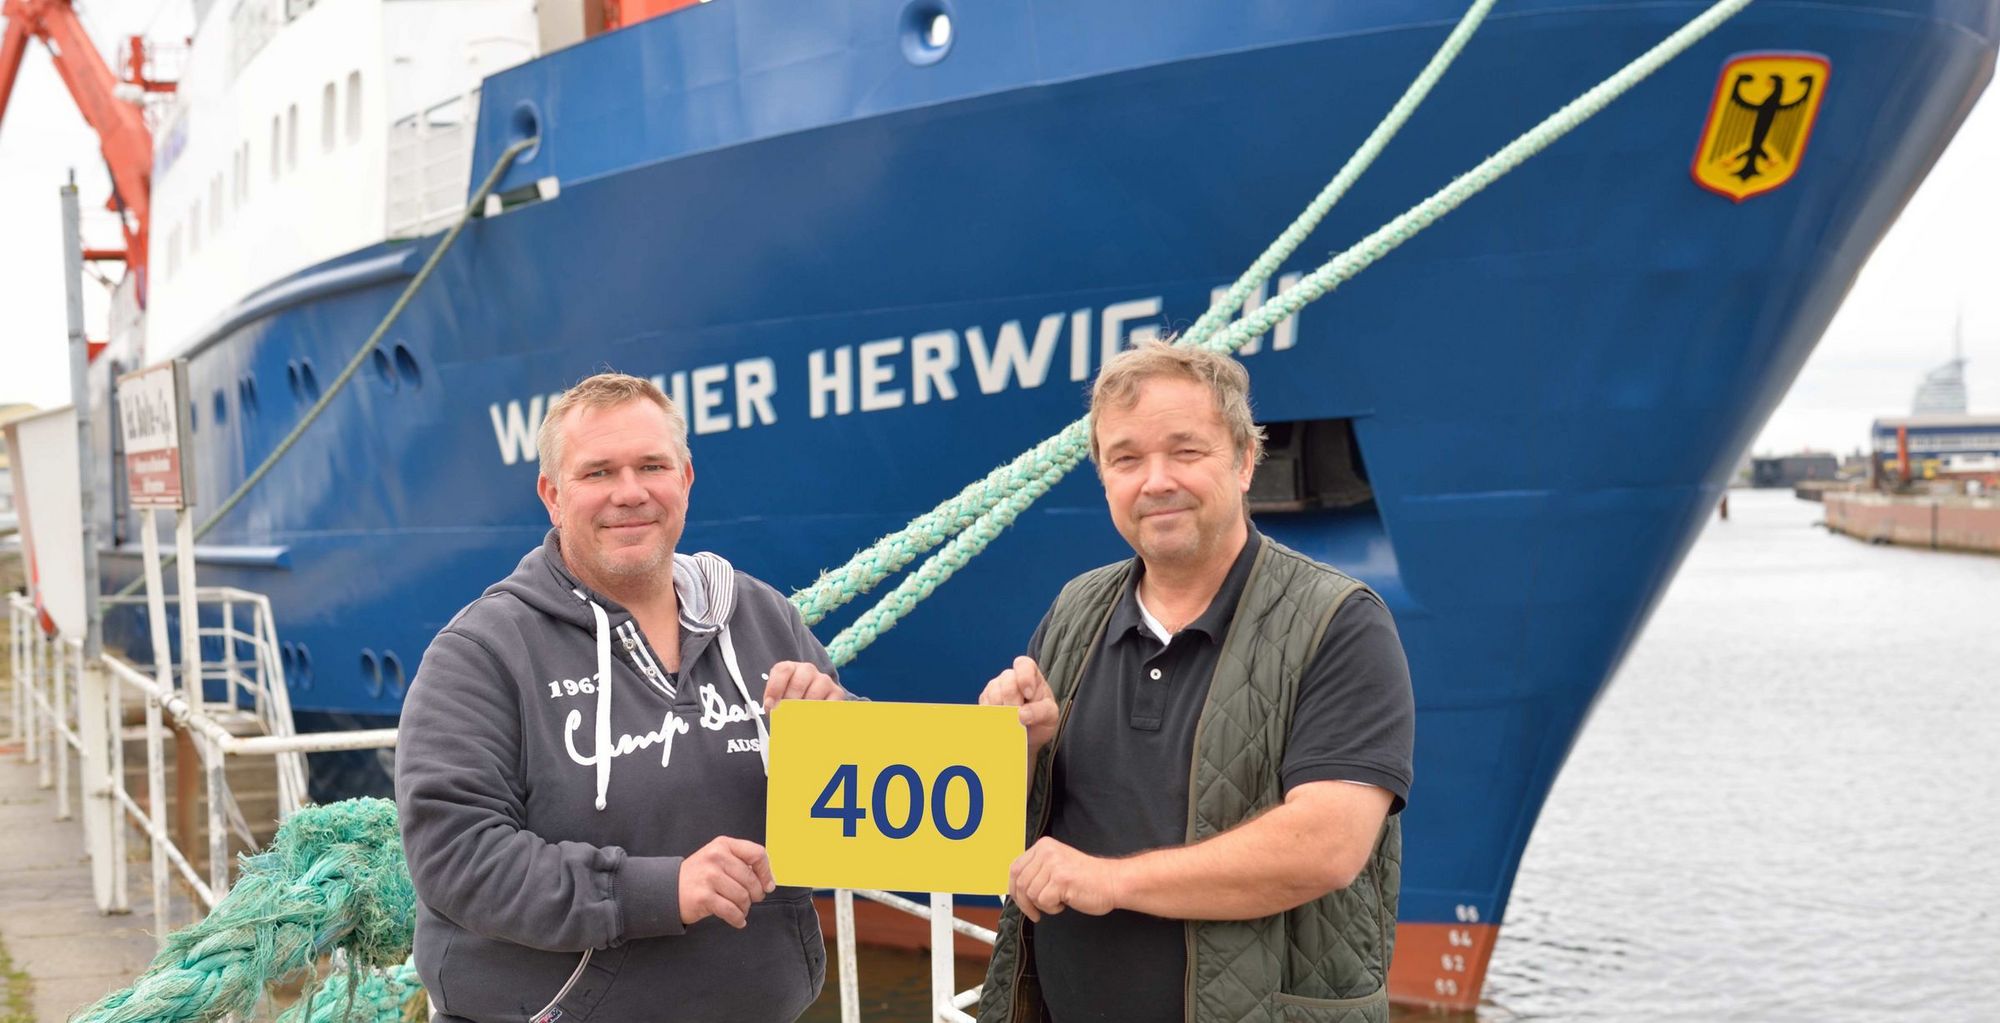 Vor dem Forschungsschiff Walther Herwig III halten der Kapitän und der Fahrtleiter ein Schild mit der Zahl 400 in die Höhe.